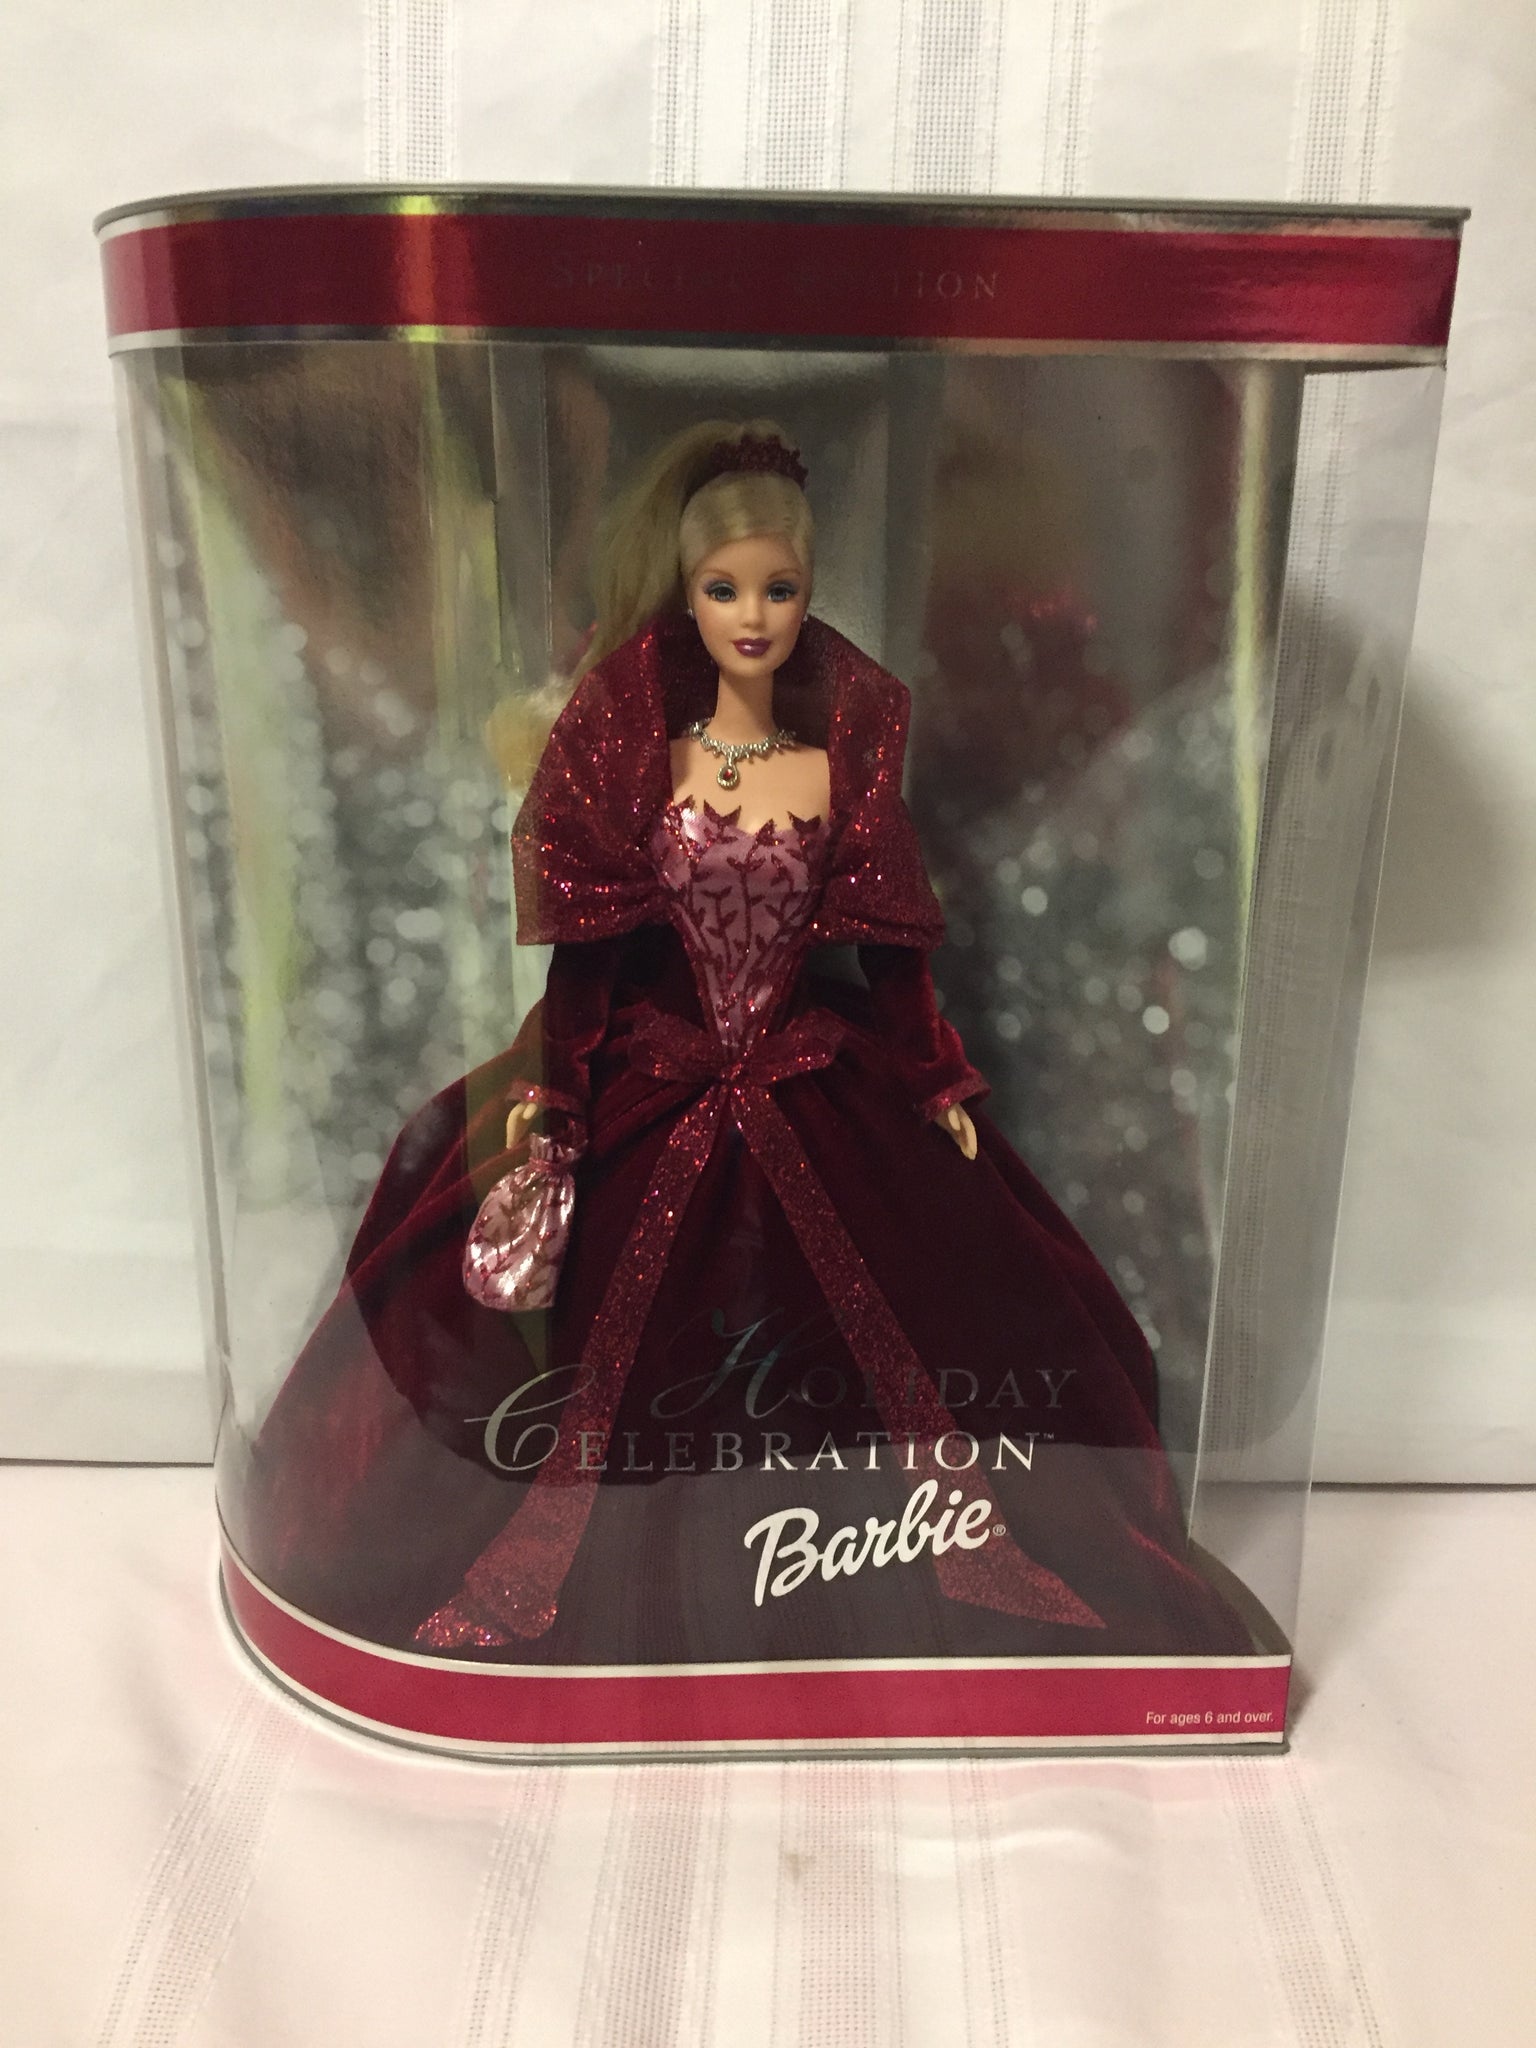 holiday celebration barbie 2002